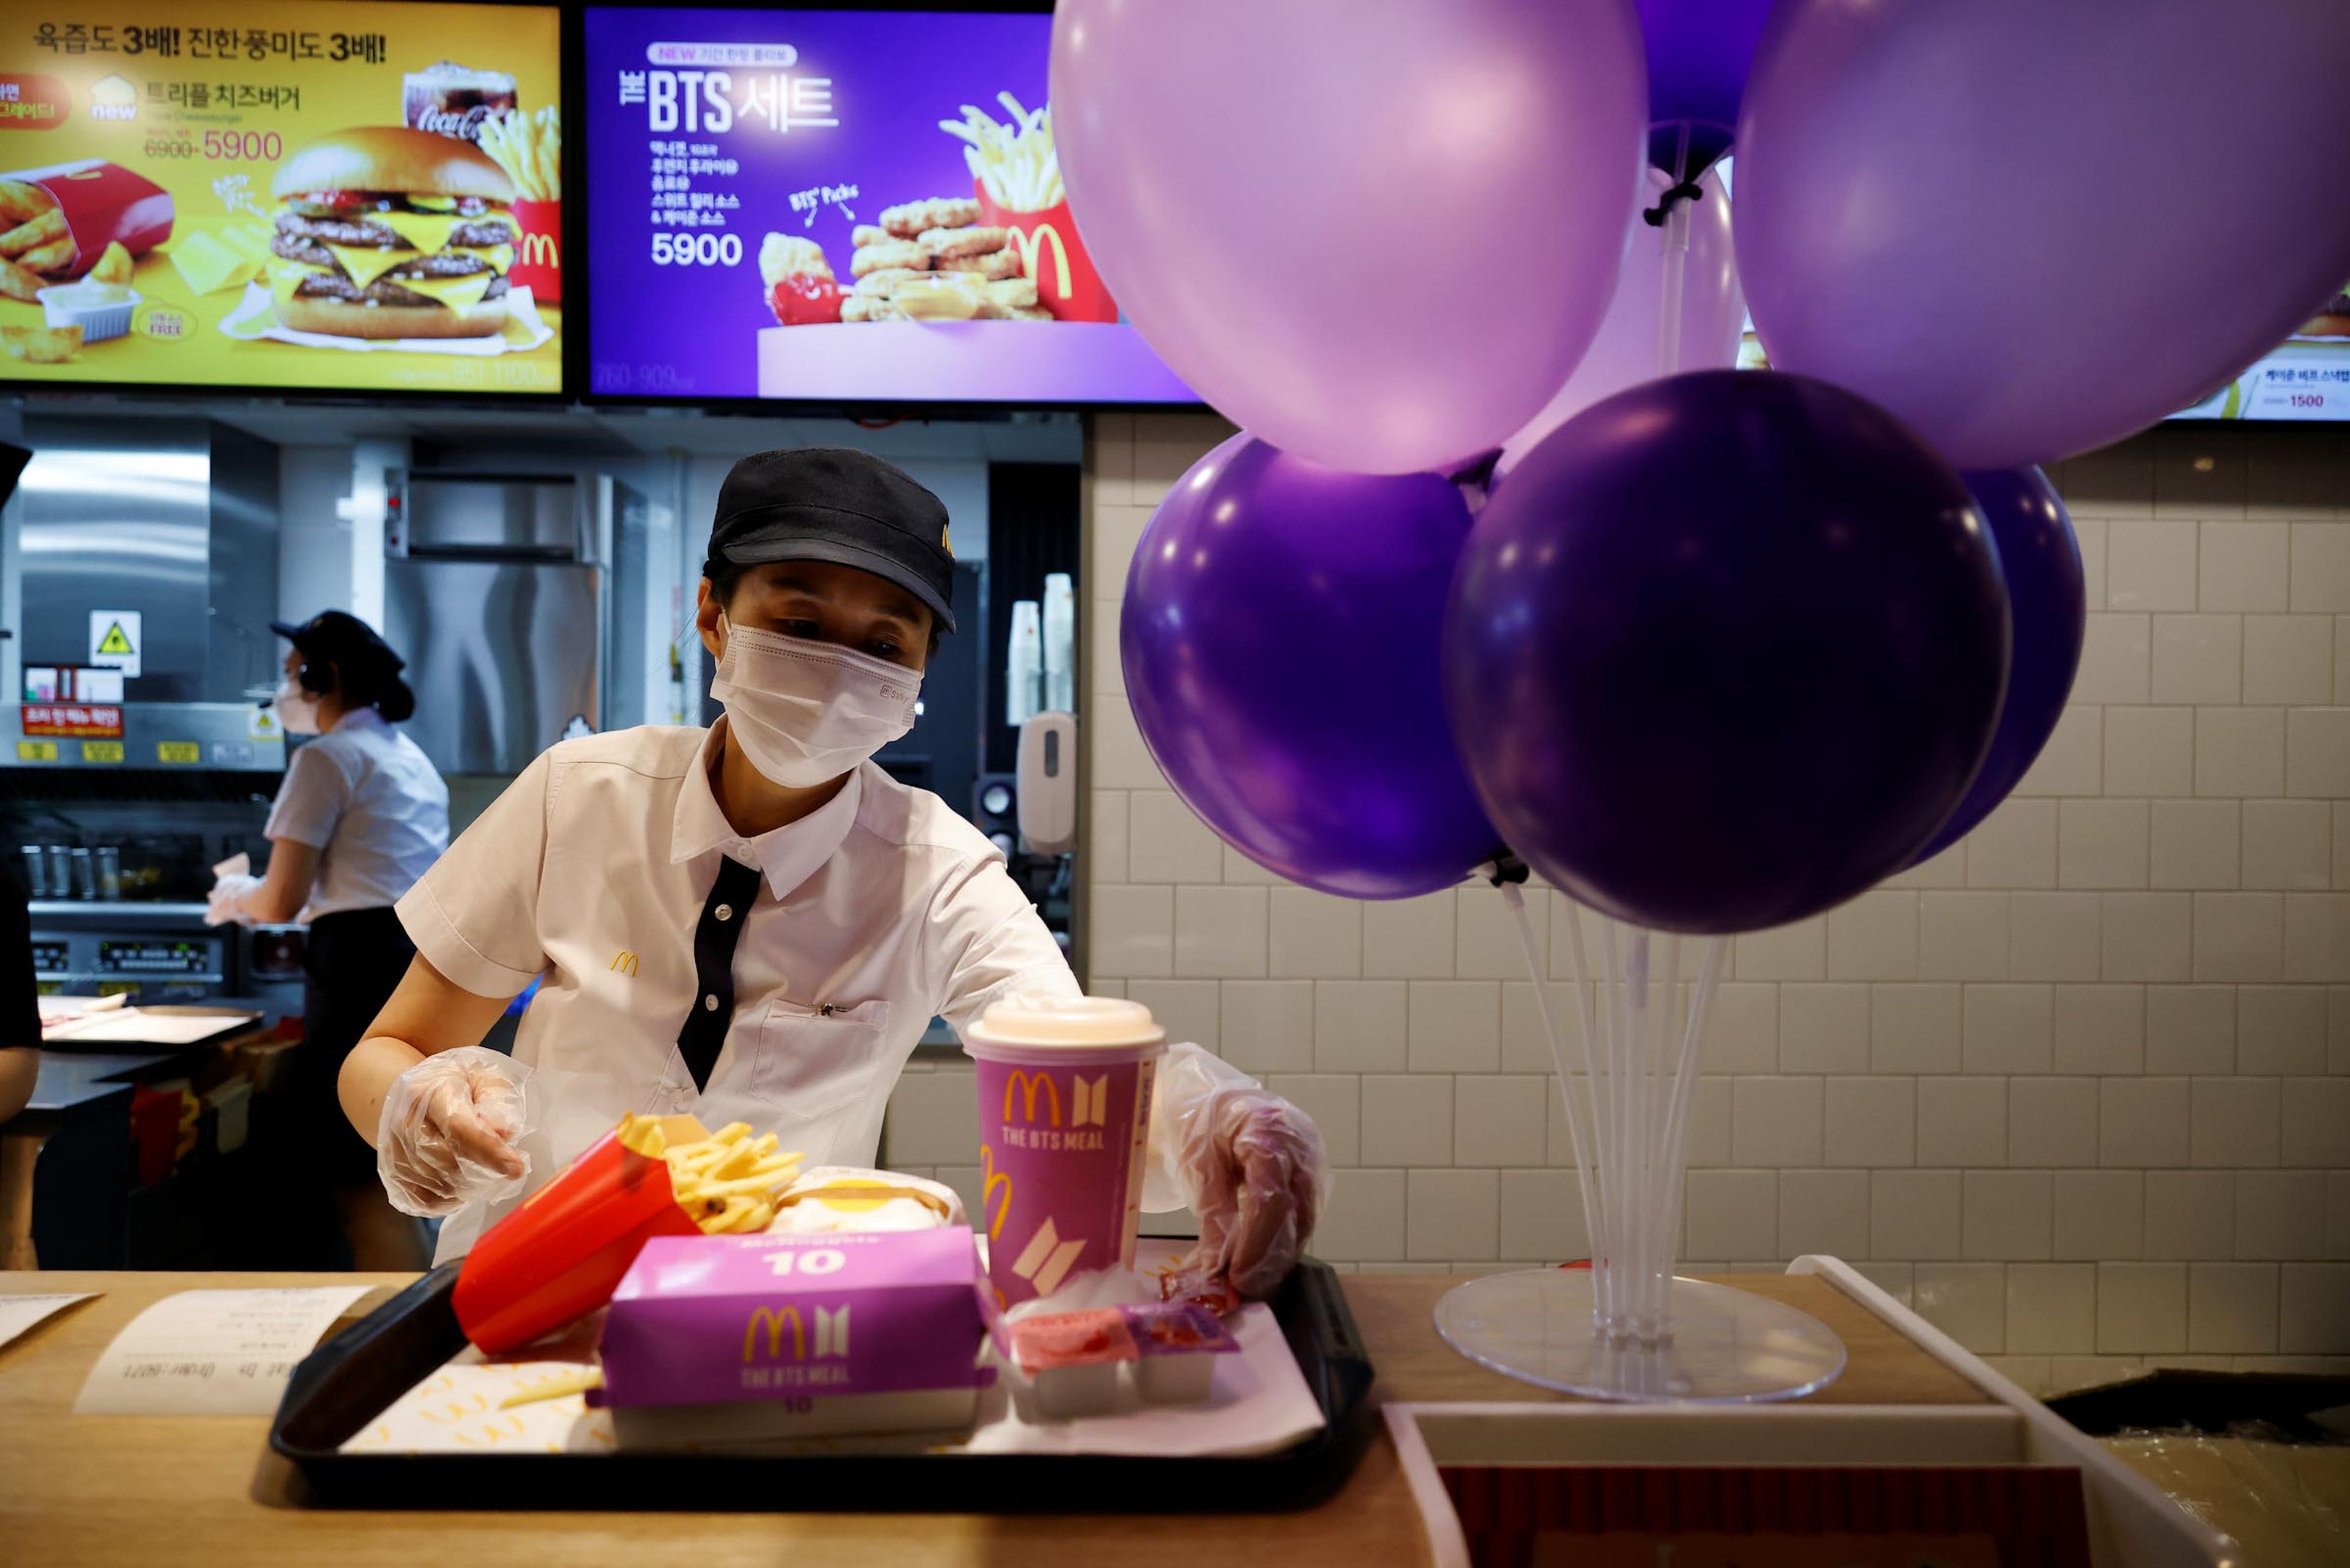 Así se vengan los empleados del McDonald's de los clientes bordes, según una extrabajadora de la cadena que también denuncia las condiciones laborales